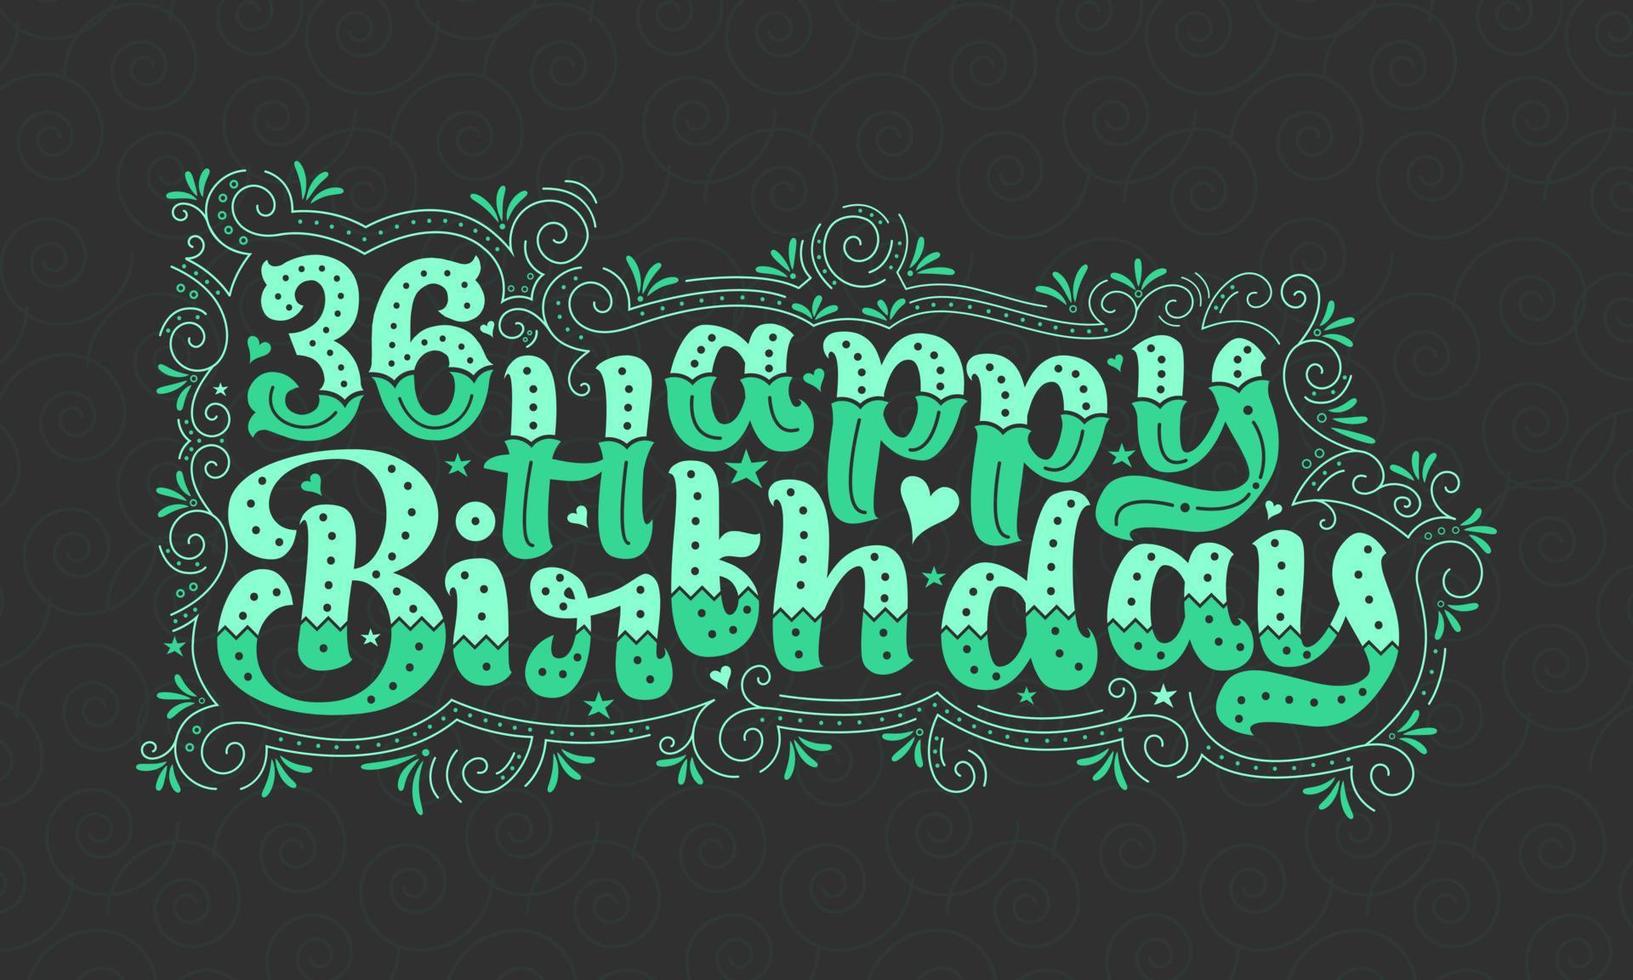 36:e grattis på födelsedagen bokstäver, 36 års födelsedag vacker typografidesign med gröna prickar, linjer och löv. vektor